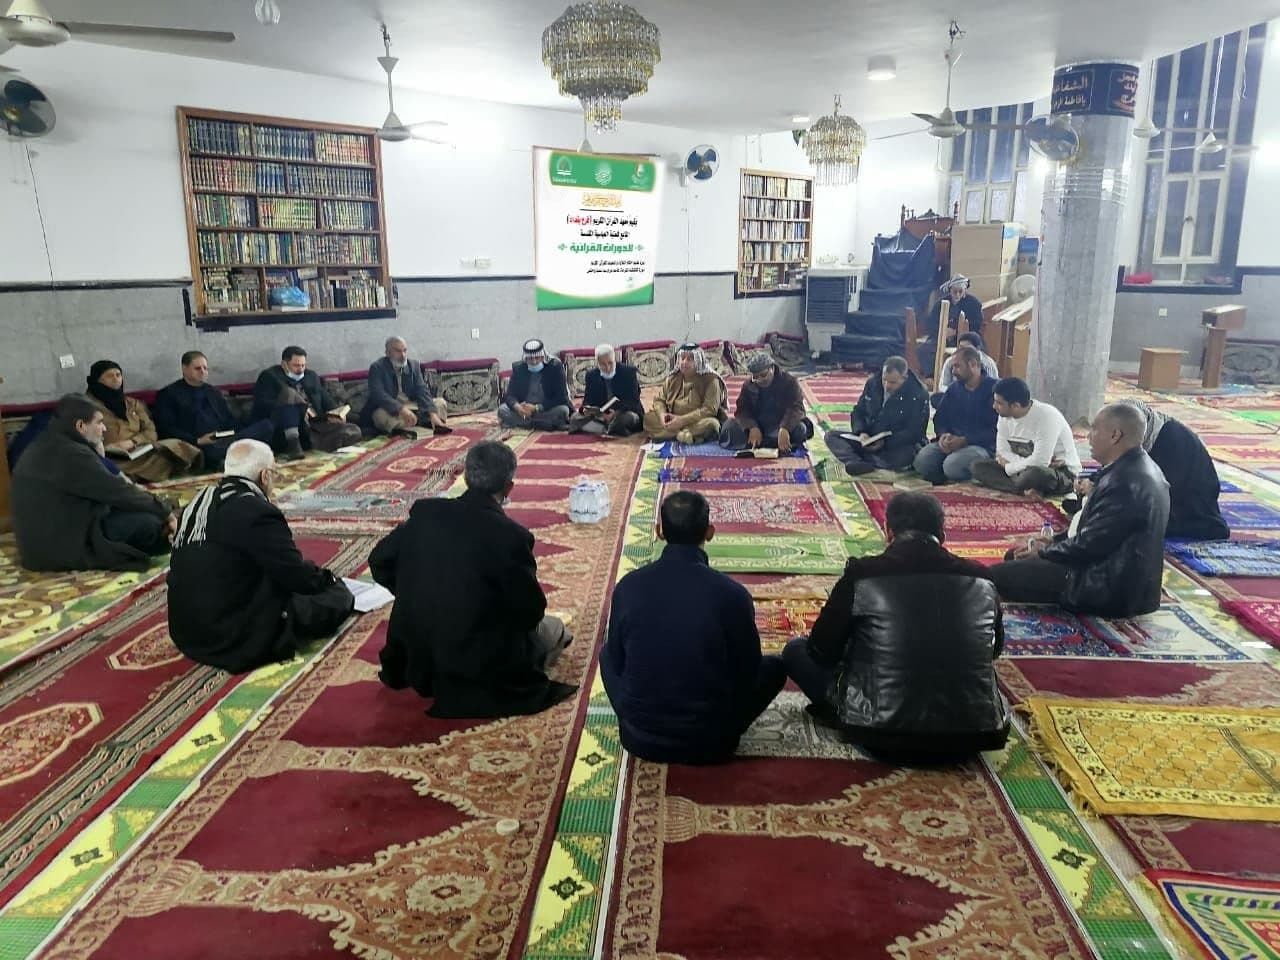 دورات متعددة يقدمها معهد القرآن الكريم بمناطق متفرقة من الكرخ في محافظة بغداد